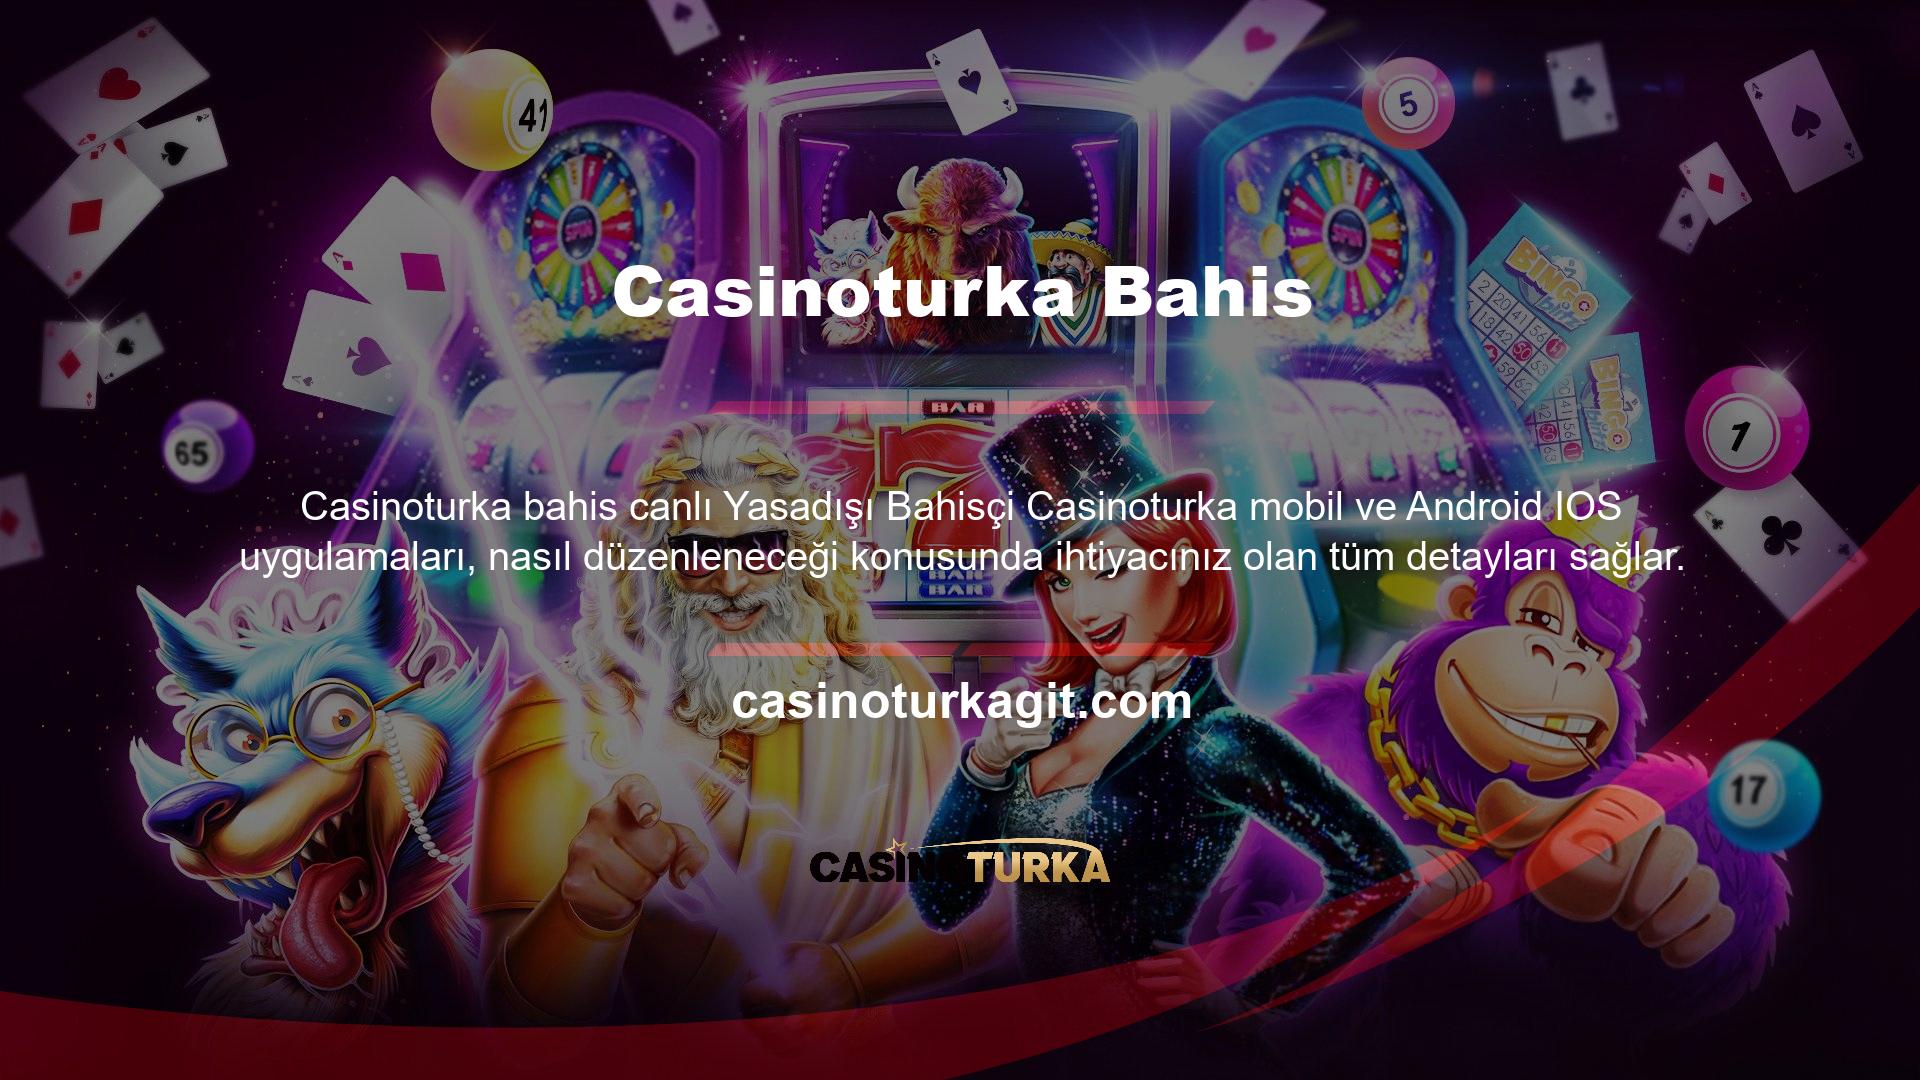 Casinoturka mobil uygulamasına iOS ve Android akıllı telefon versiyonlarında paylaştığımız link üzerinden ulaşabilirsiniz